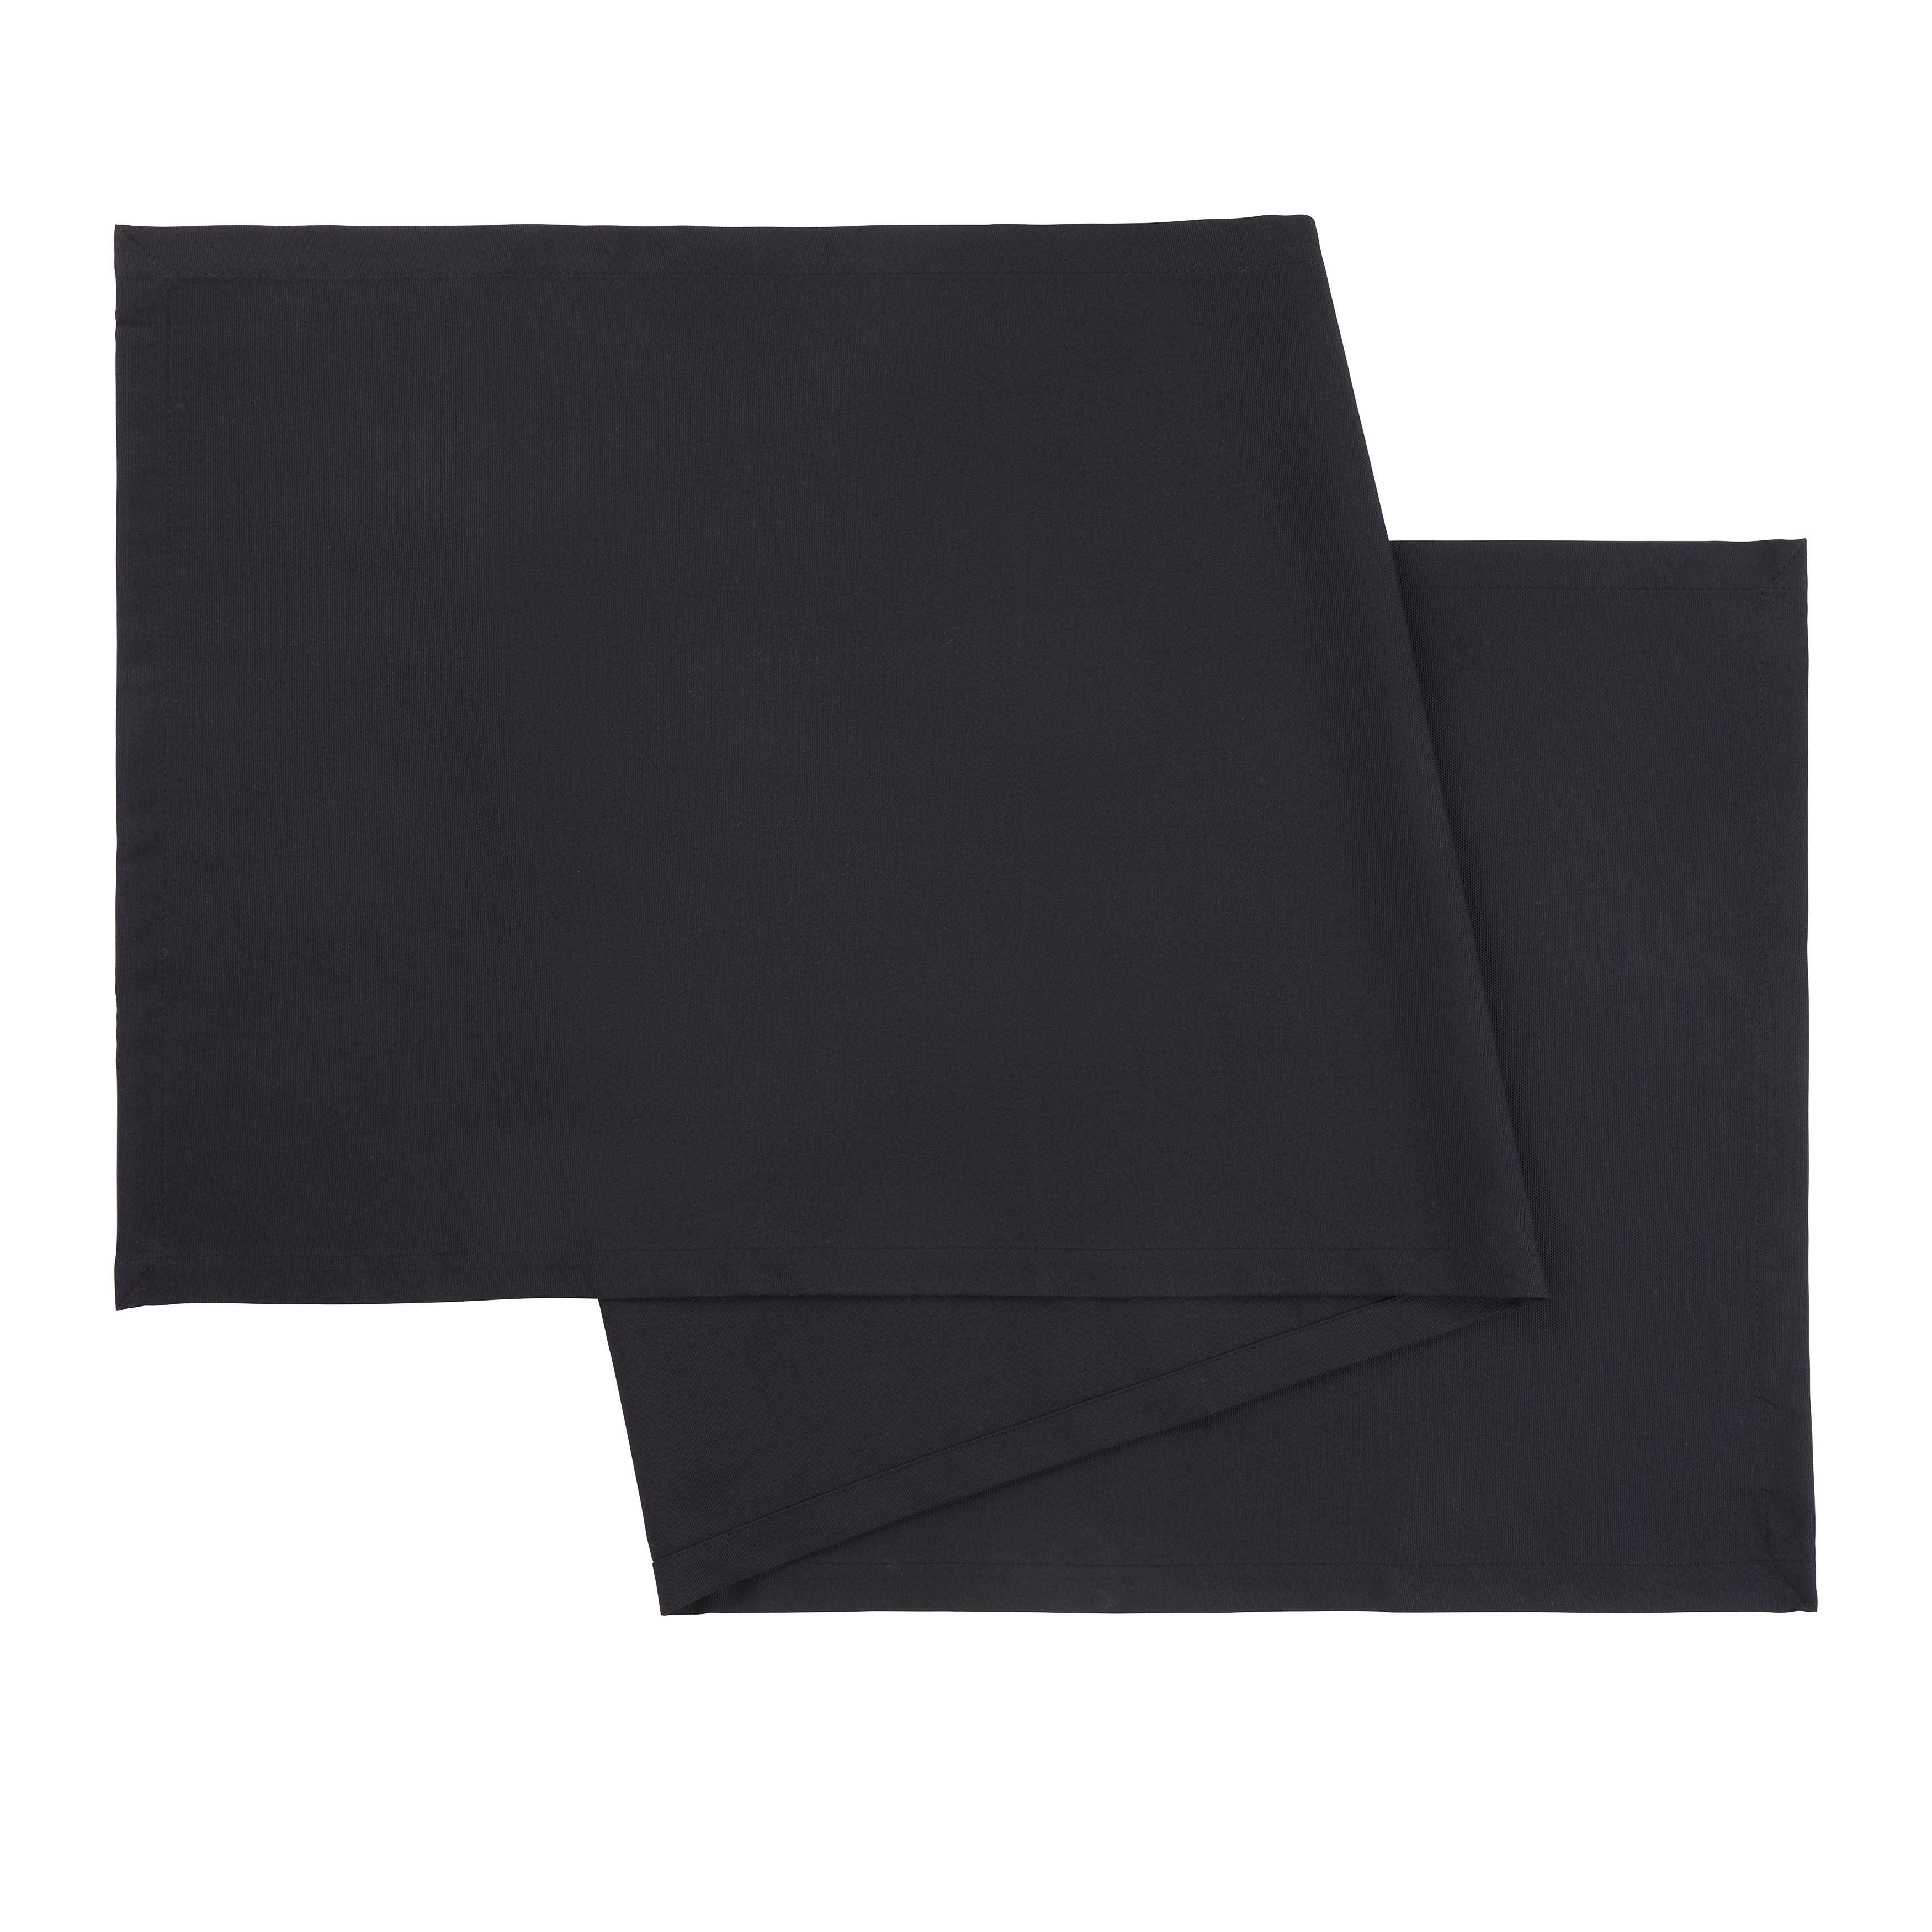 NADSTOLNJAK STEFFI - crna, tekstil (45/150cm) - Modern Living